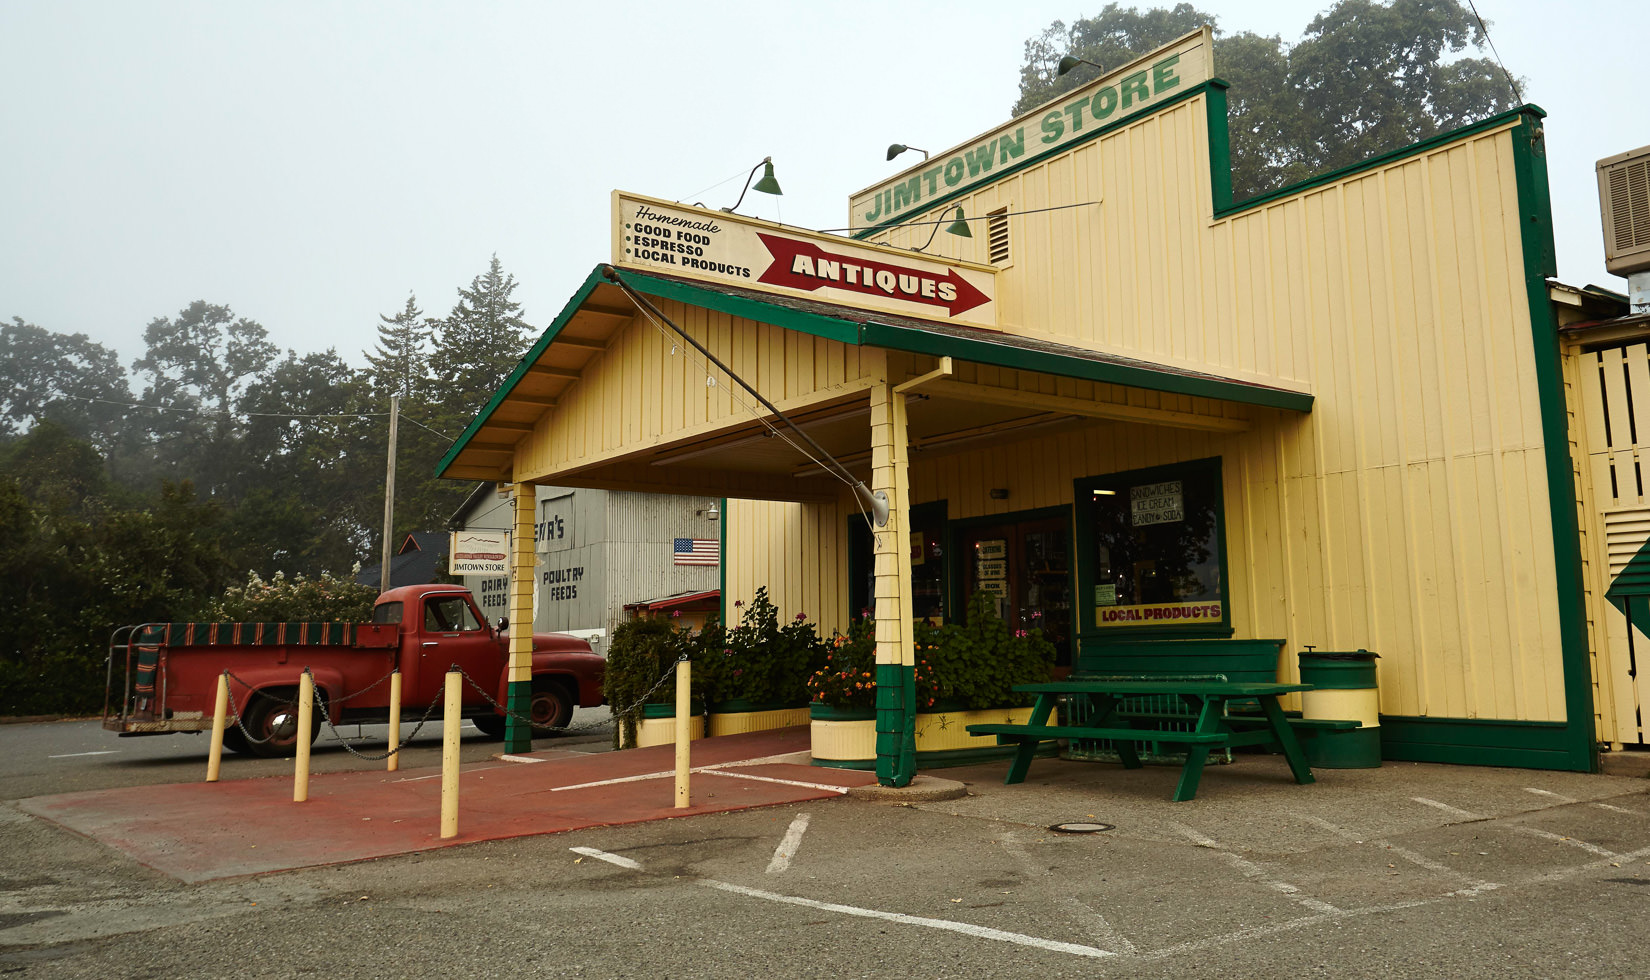 Jimtown Store entrance, Alexander Valley Healdsburg